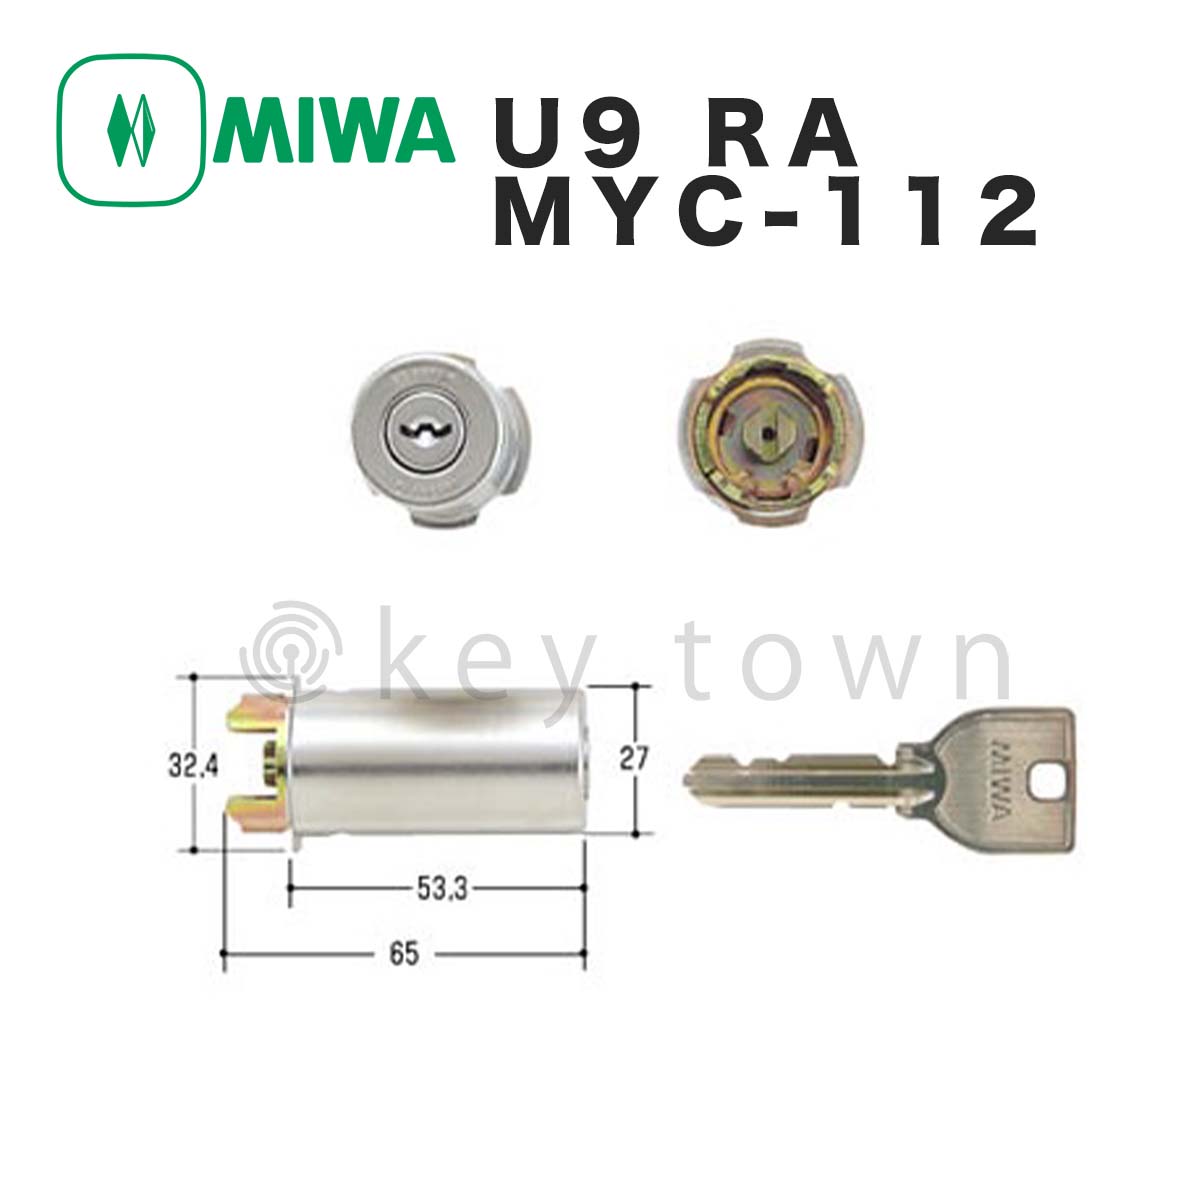 素晴らしい ミズタニ:MIWA取替用シリンダー MCY-442 鍵 交換用